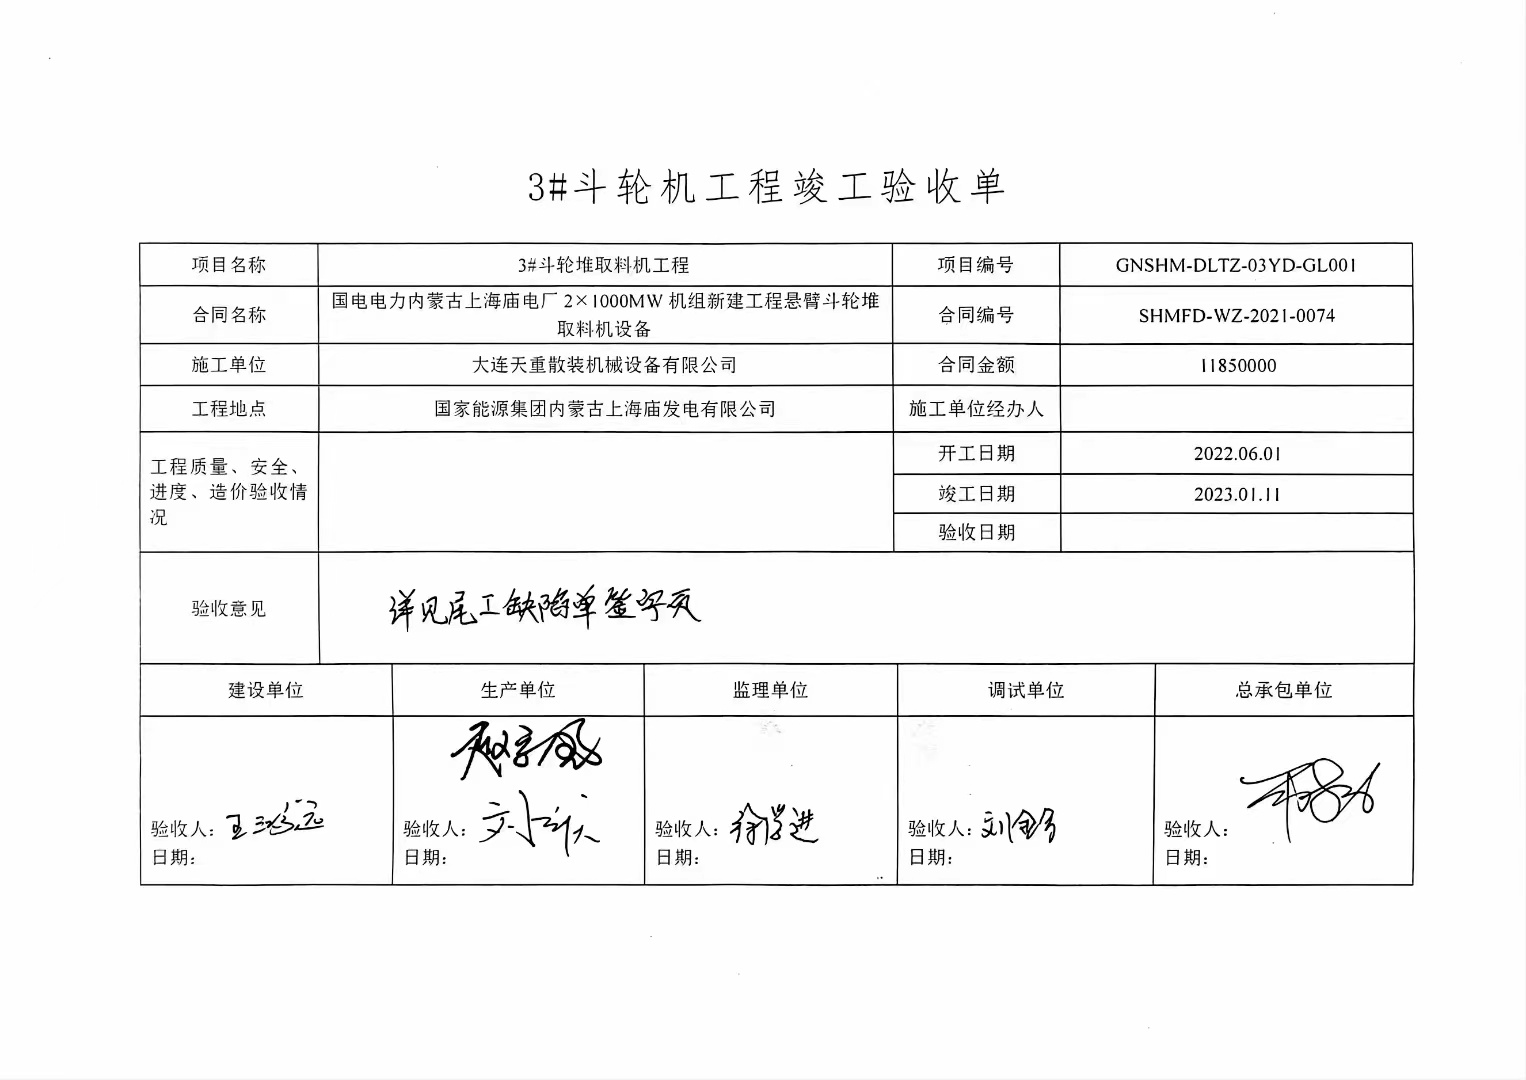 喜贺我公司承接的国家能源集团内蒙古上海庙发电有限公司《斗轮堆取料机》项目，顺利整体验收合格。